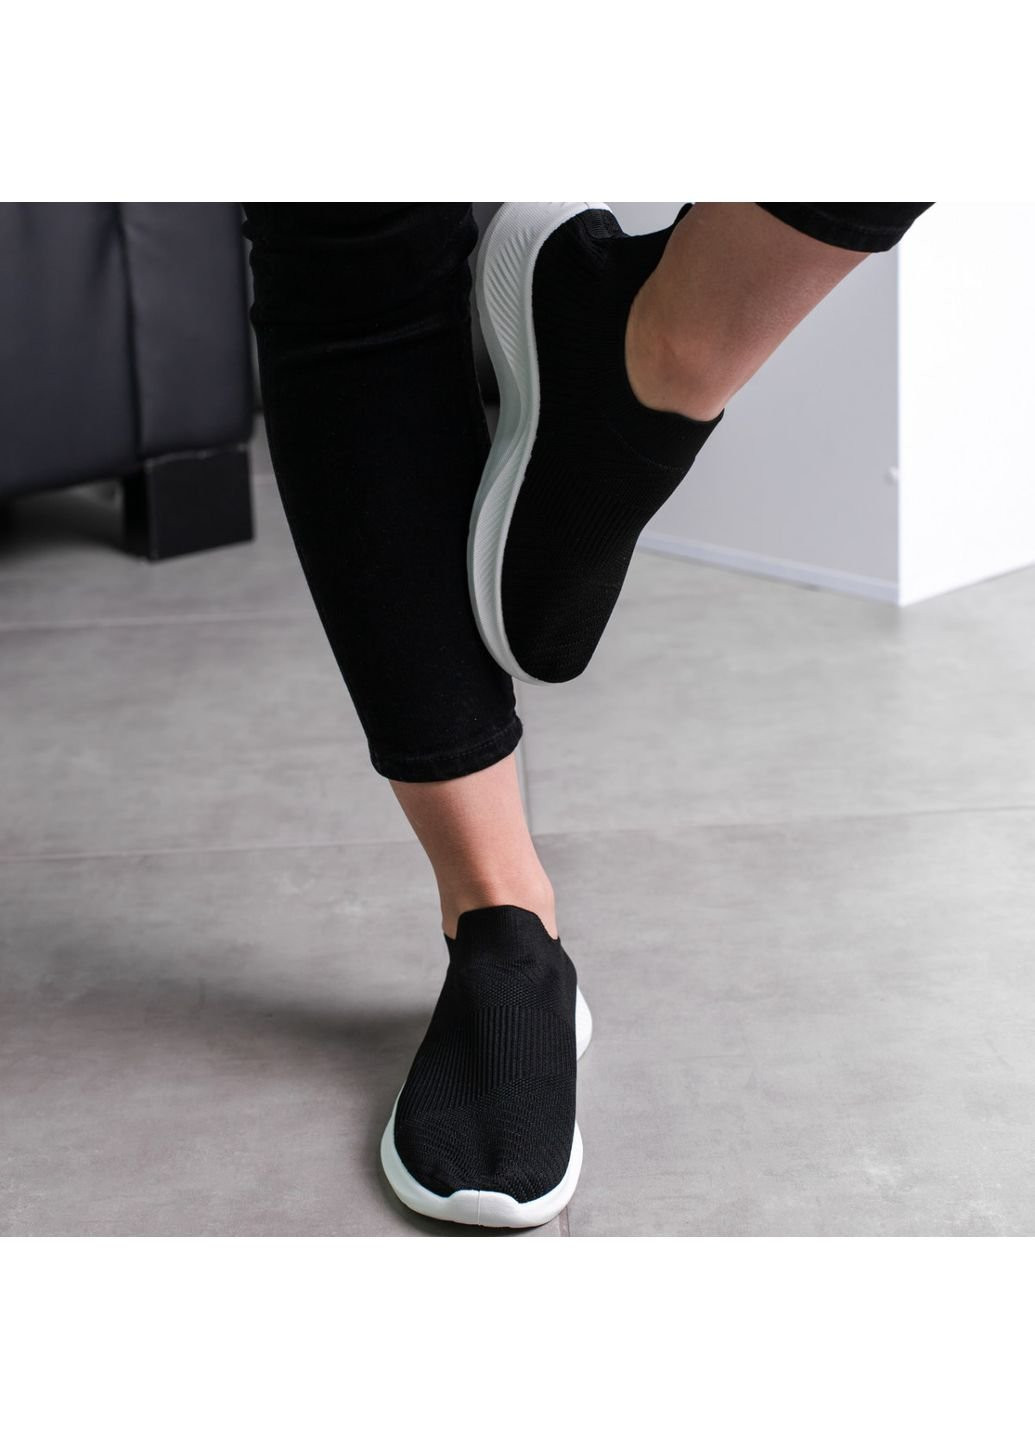 Черные демисезонные кроссовки женские oreo 3554 39 25 см черный Fashion